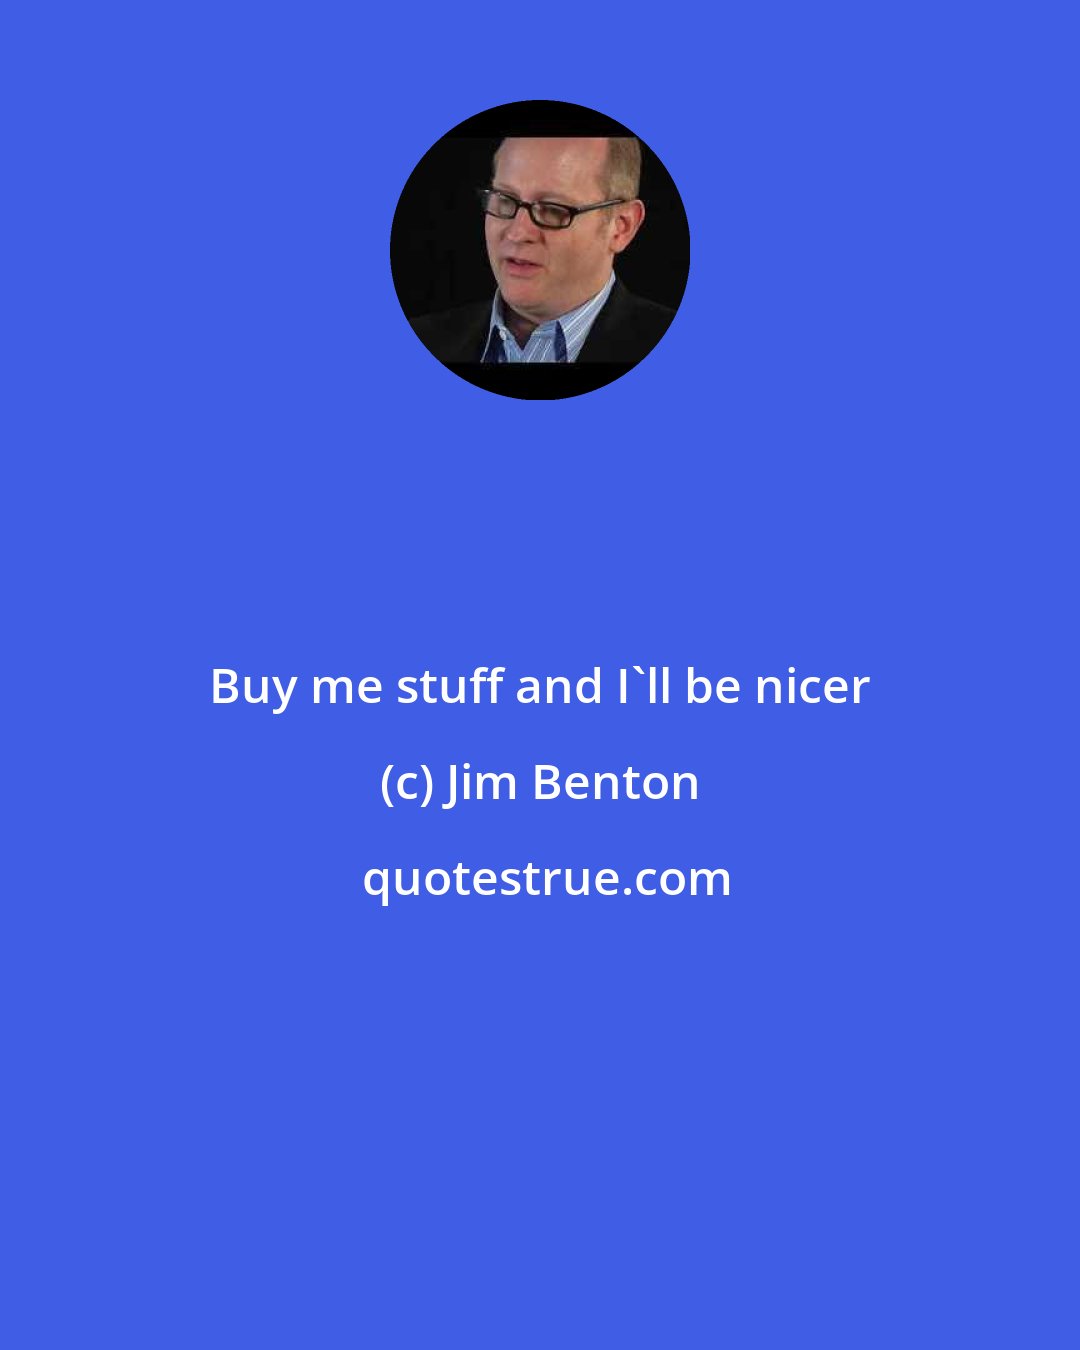 Jim Benton: Buy me stuff and I'll be nicer